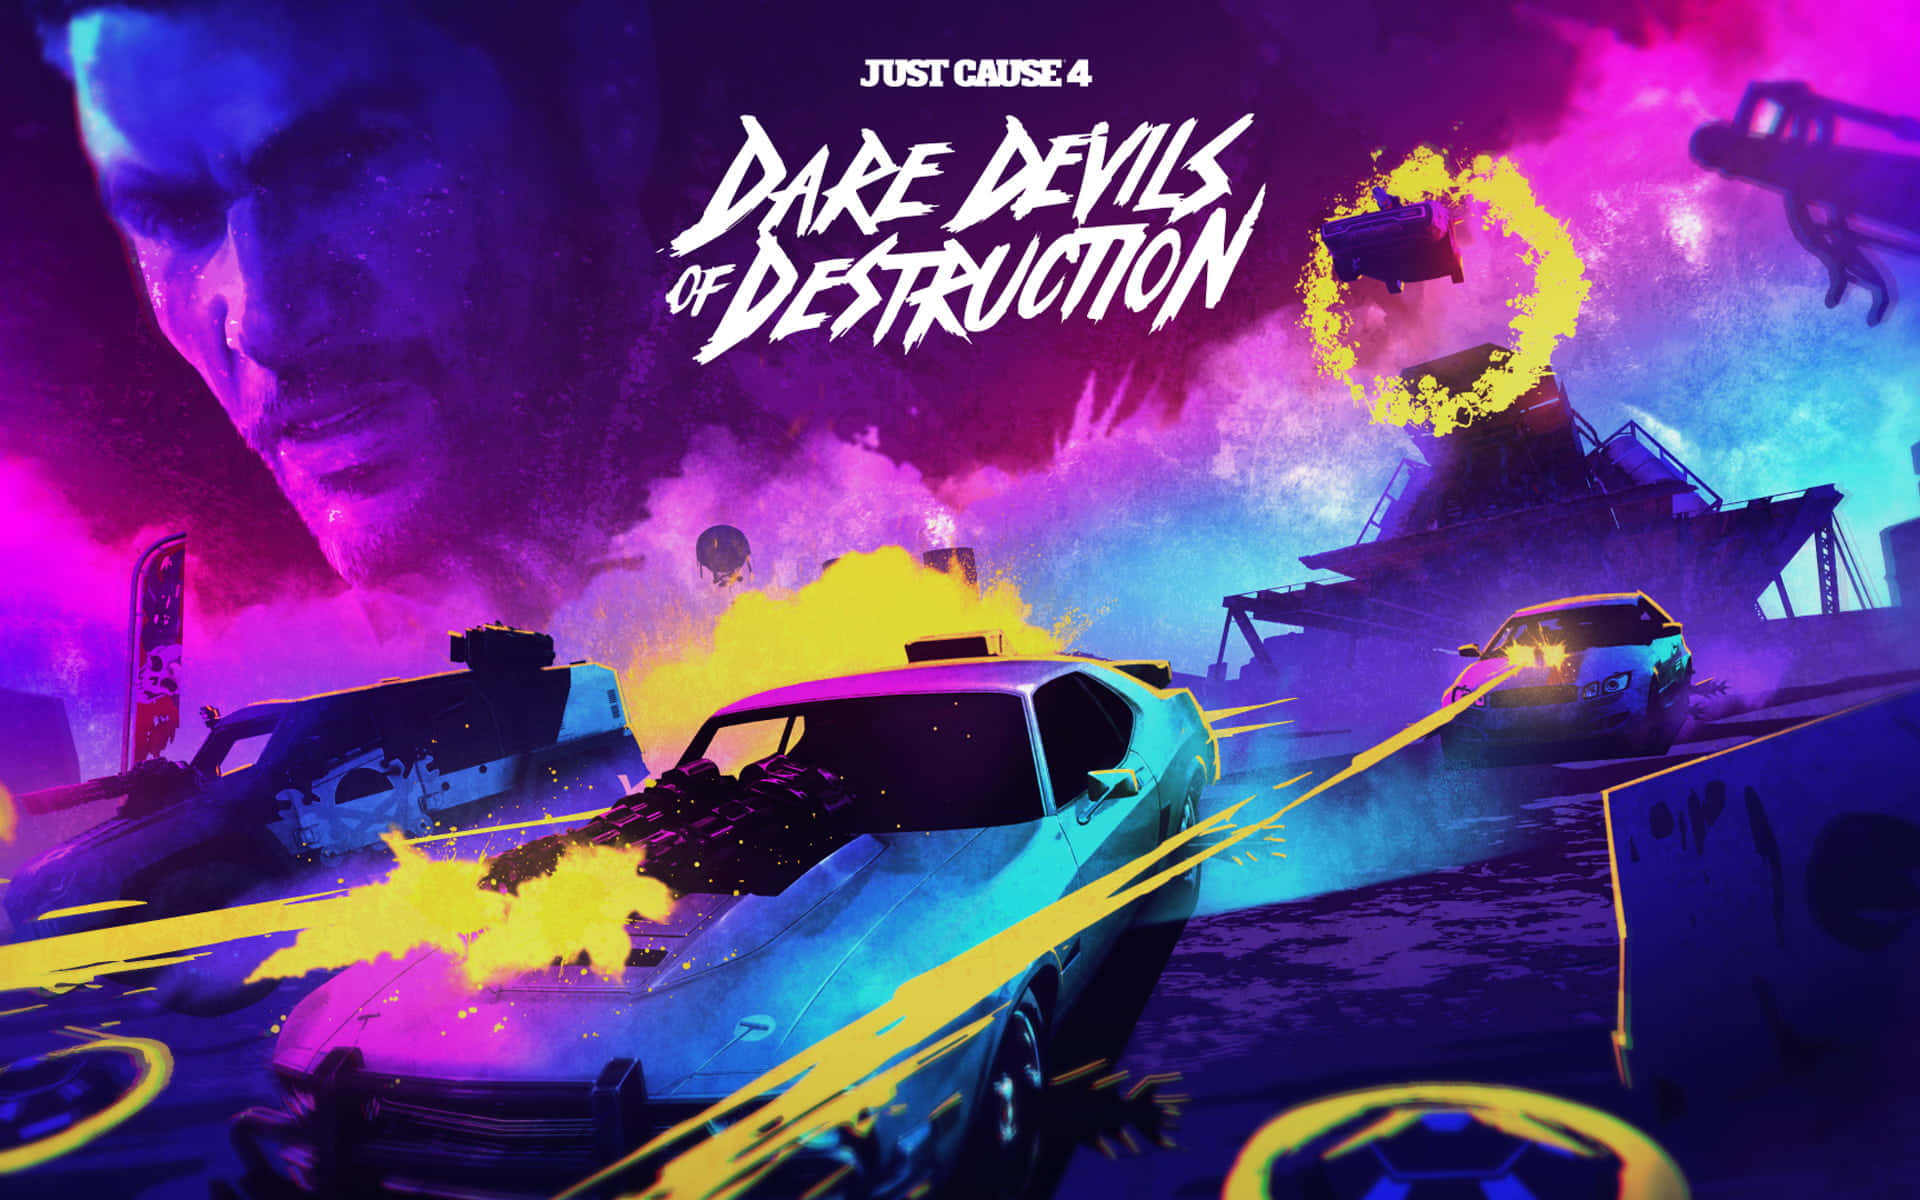 Mejorfondo De Pantalla De Just Cause 4, Cartel De Dare Devils Of Destruction.